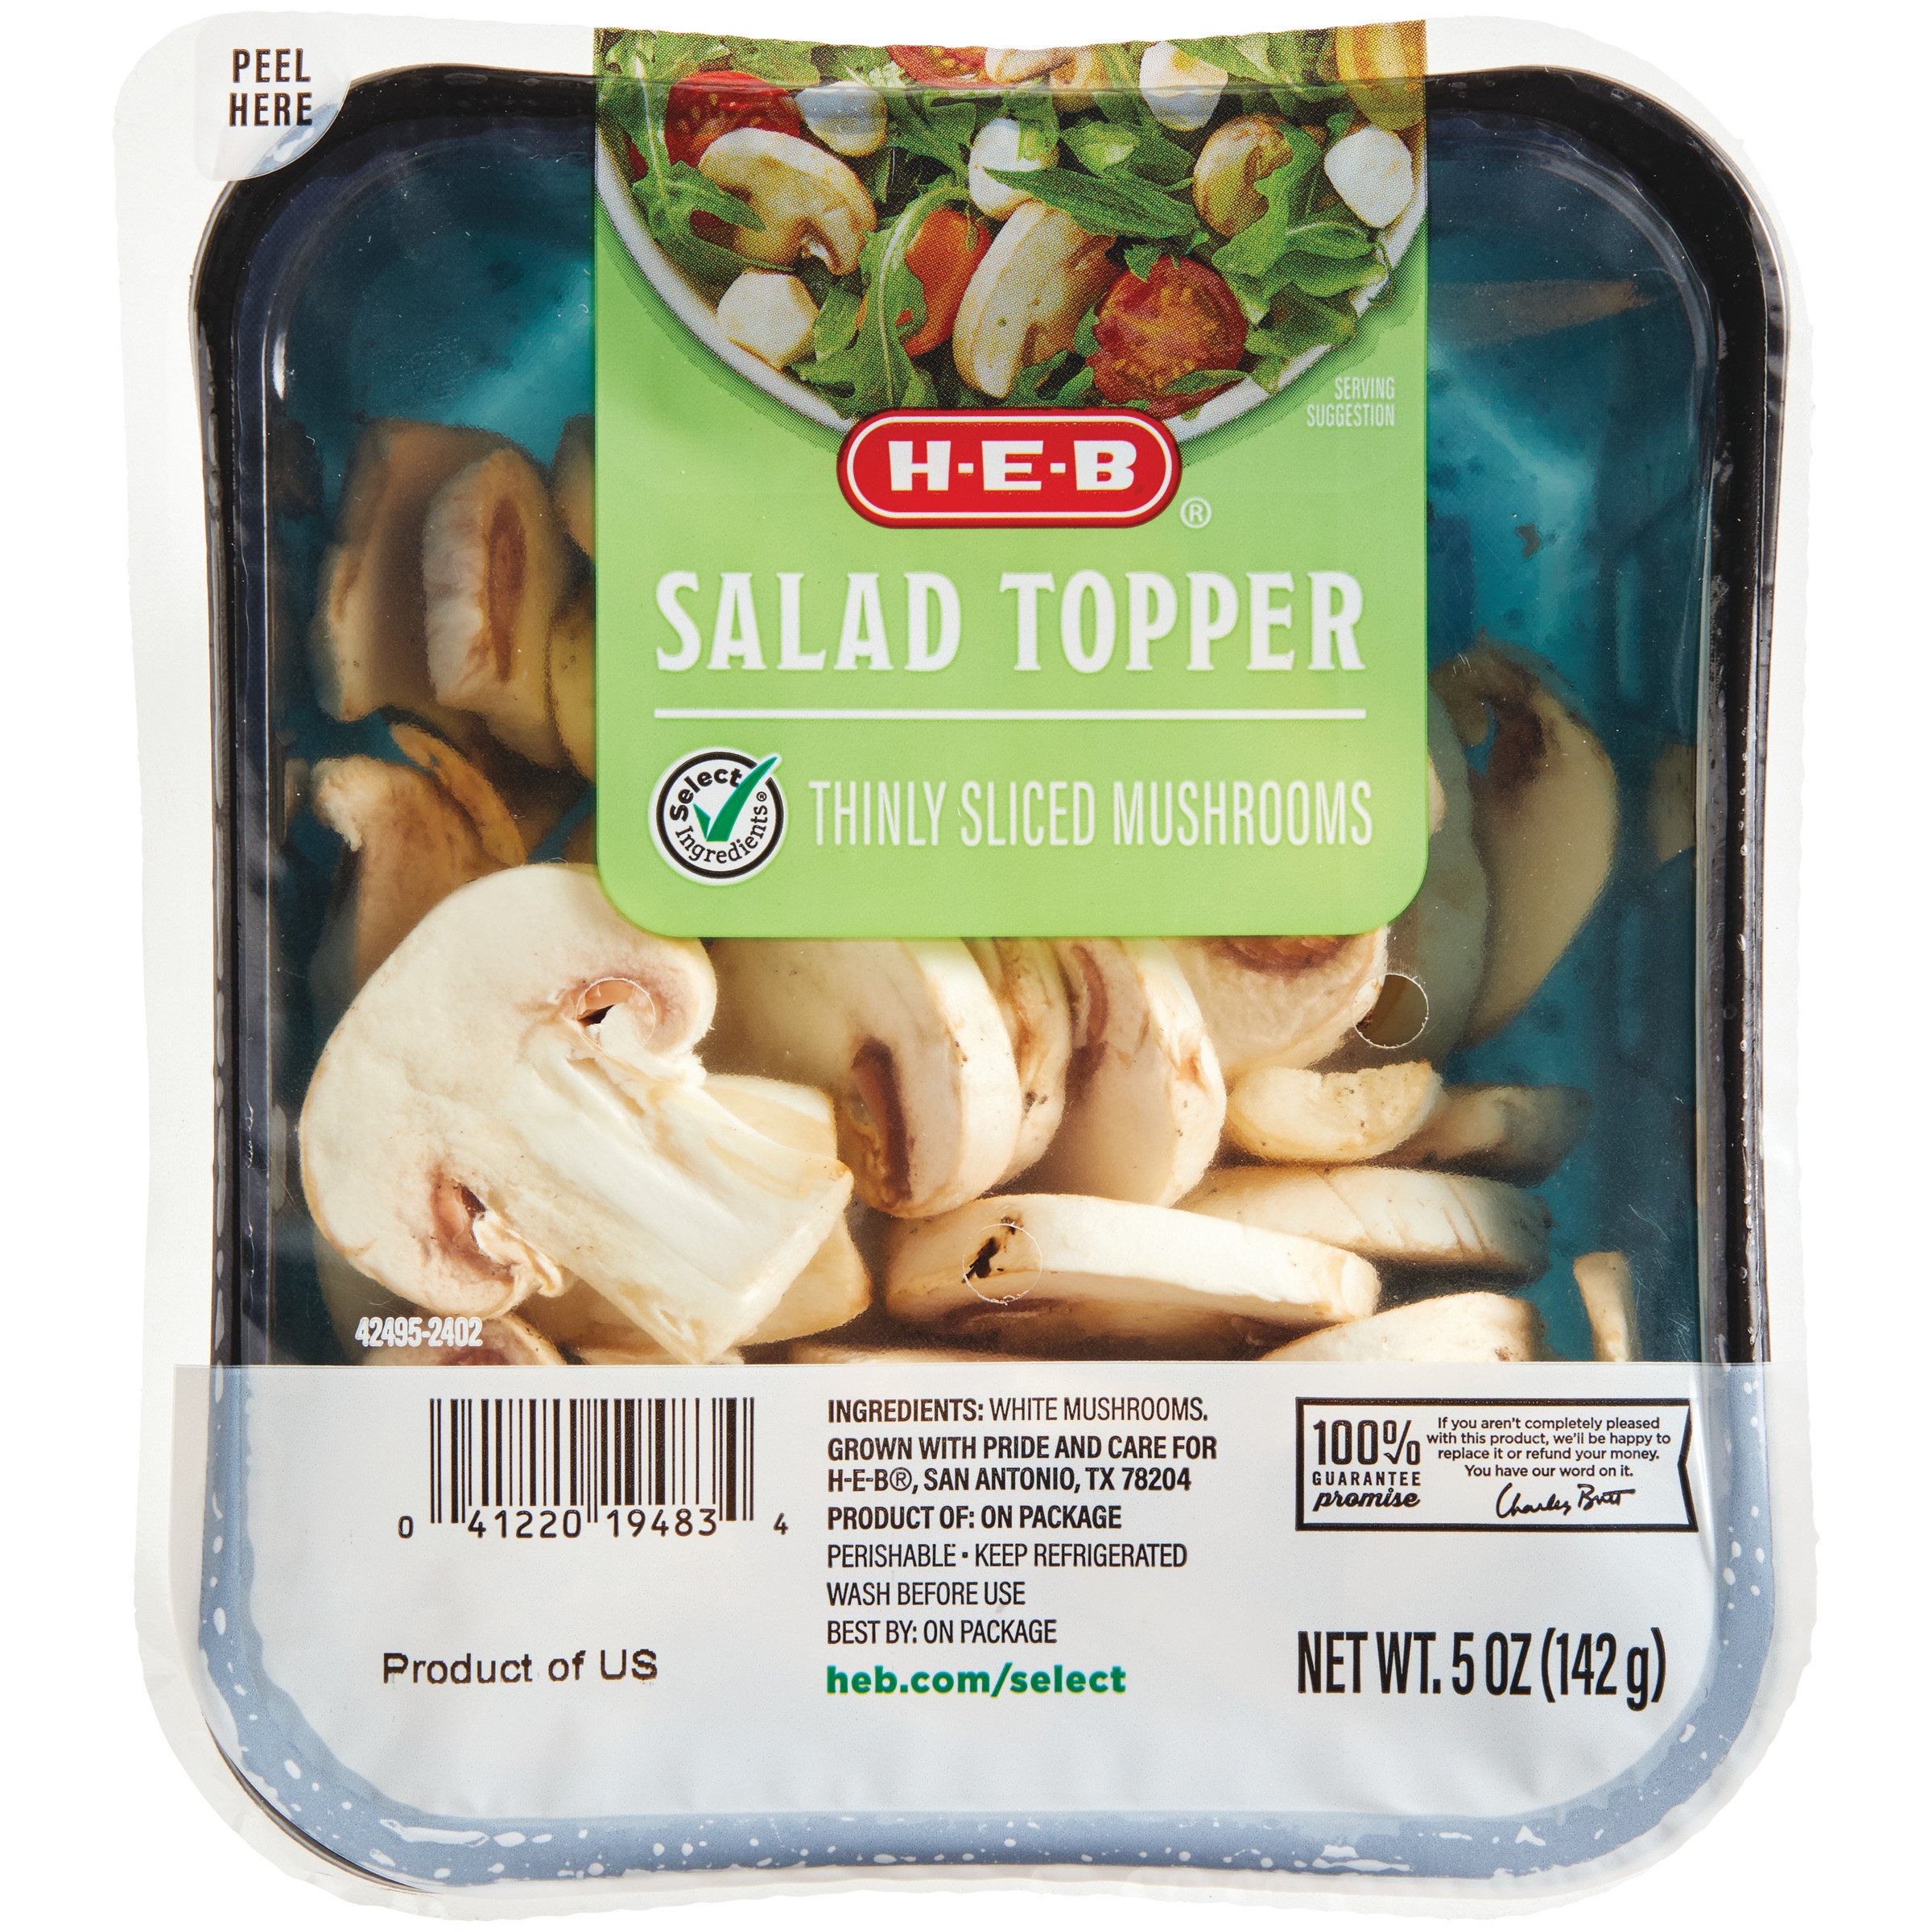 Norpro Salad Dressing Shaker/Maker - Shop Food Storage at H-E-B